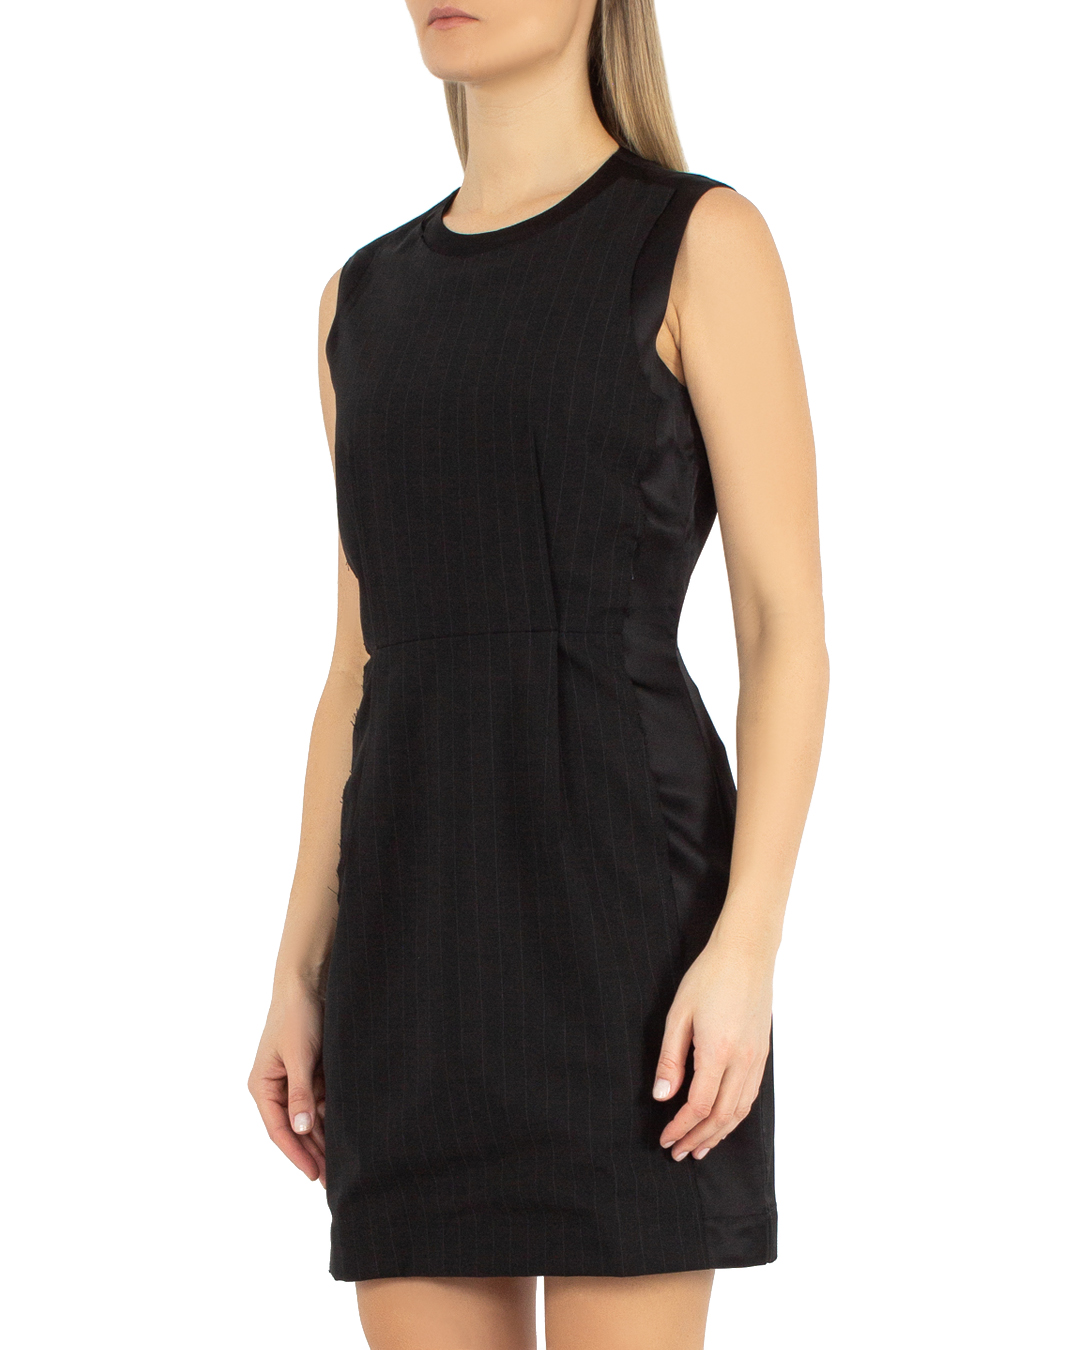 платье мини MM6 Maison Margiela S52DA0007 черный 40, размер 40 - фото 3